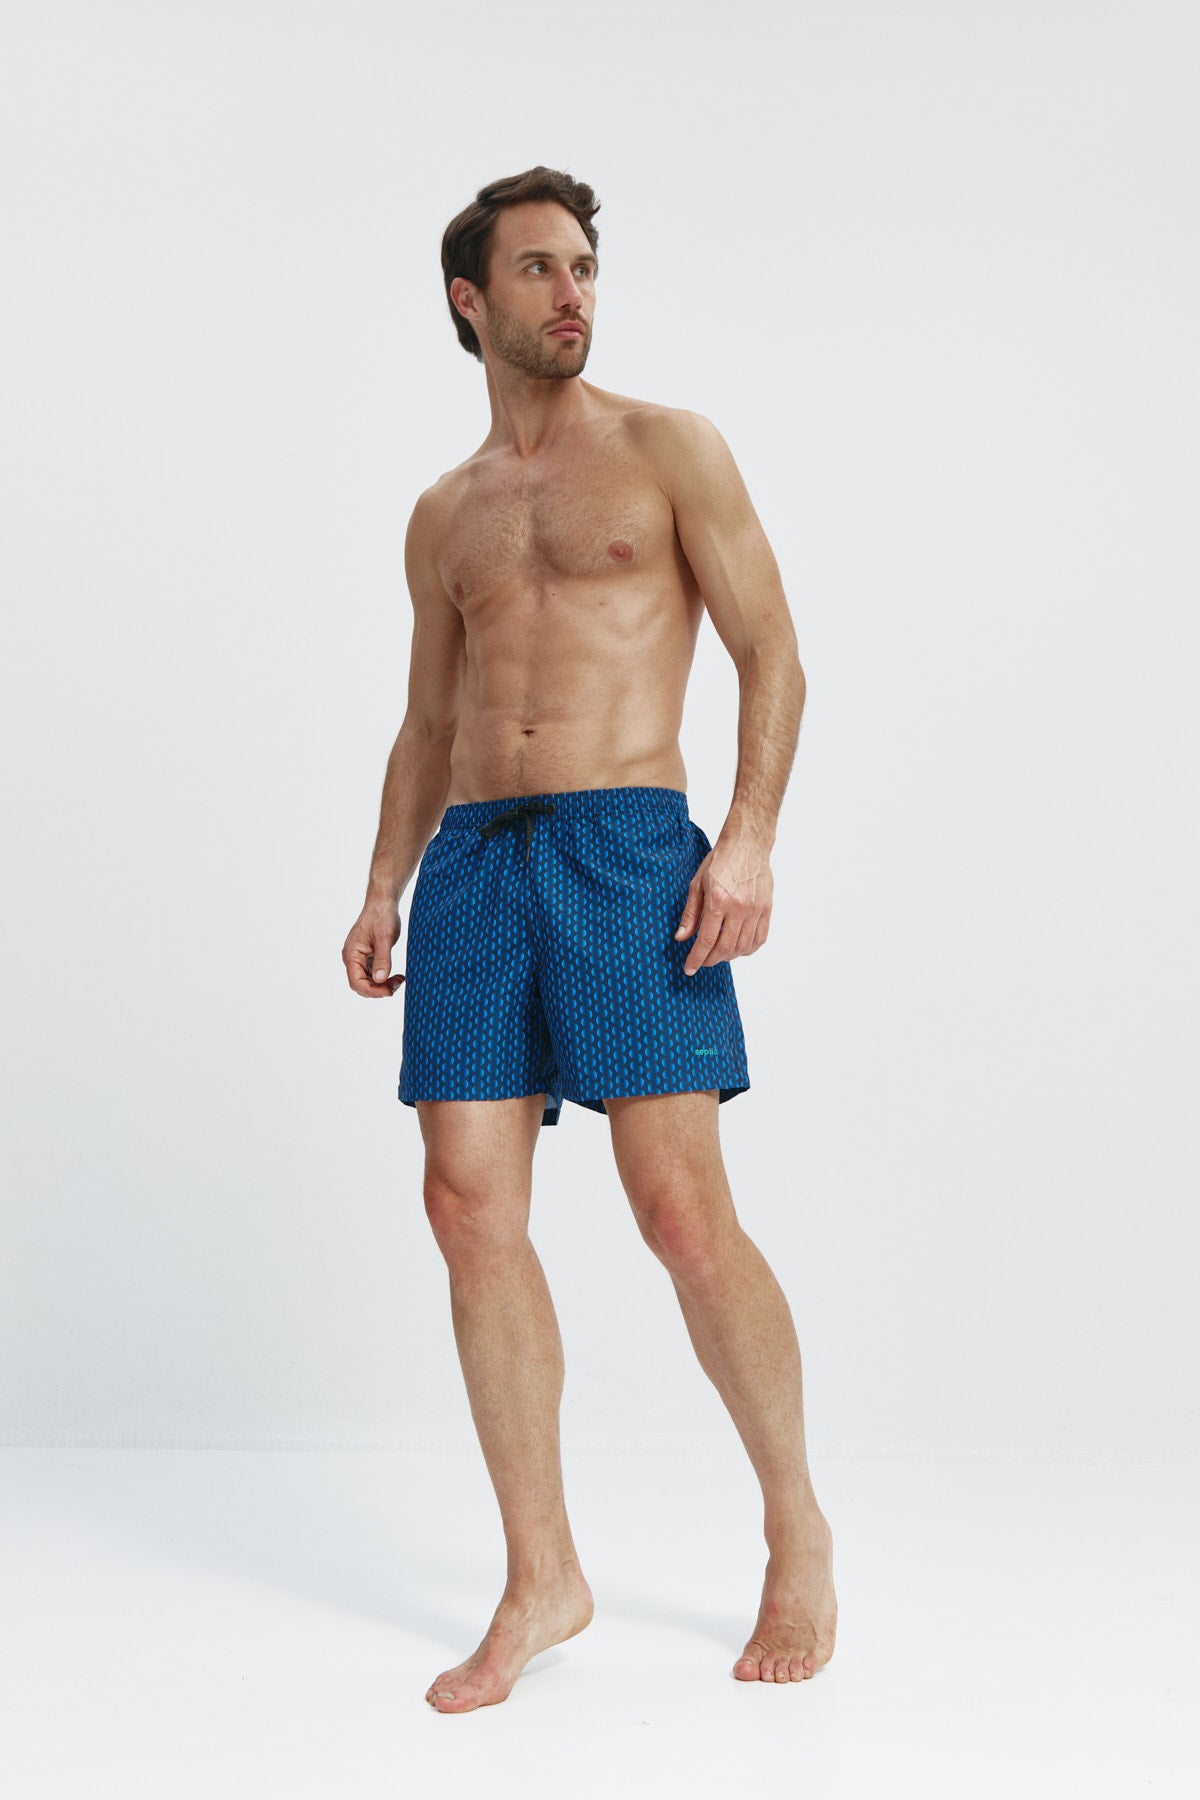 Bañador de hombre con estampado aleta,secado rápido, protección UV50+, ligero, resistente y cómodo. Foto flexibilidad